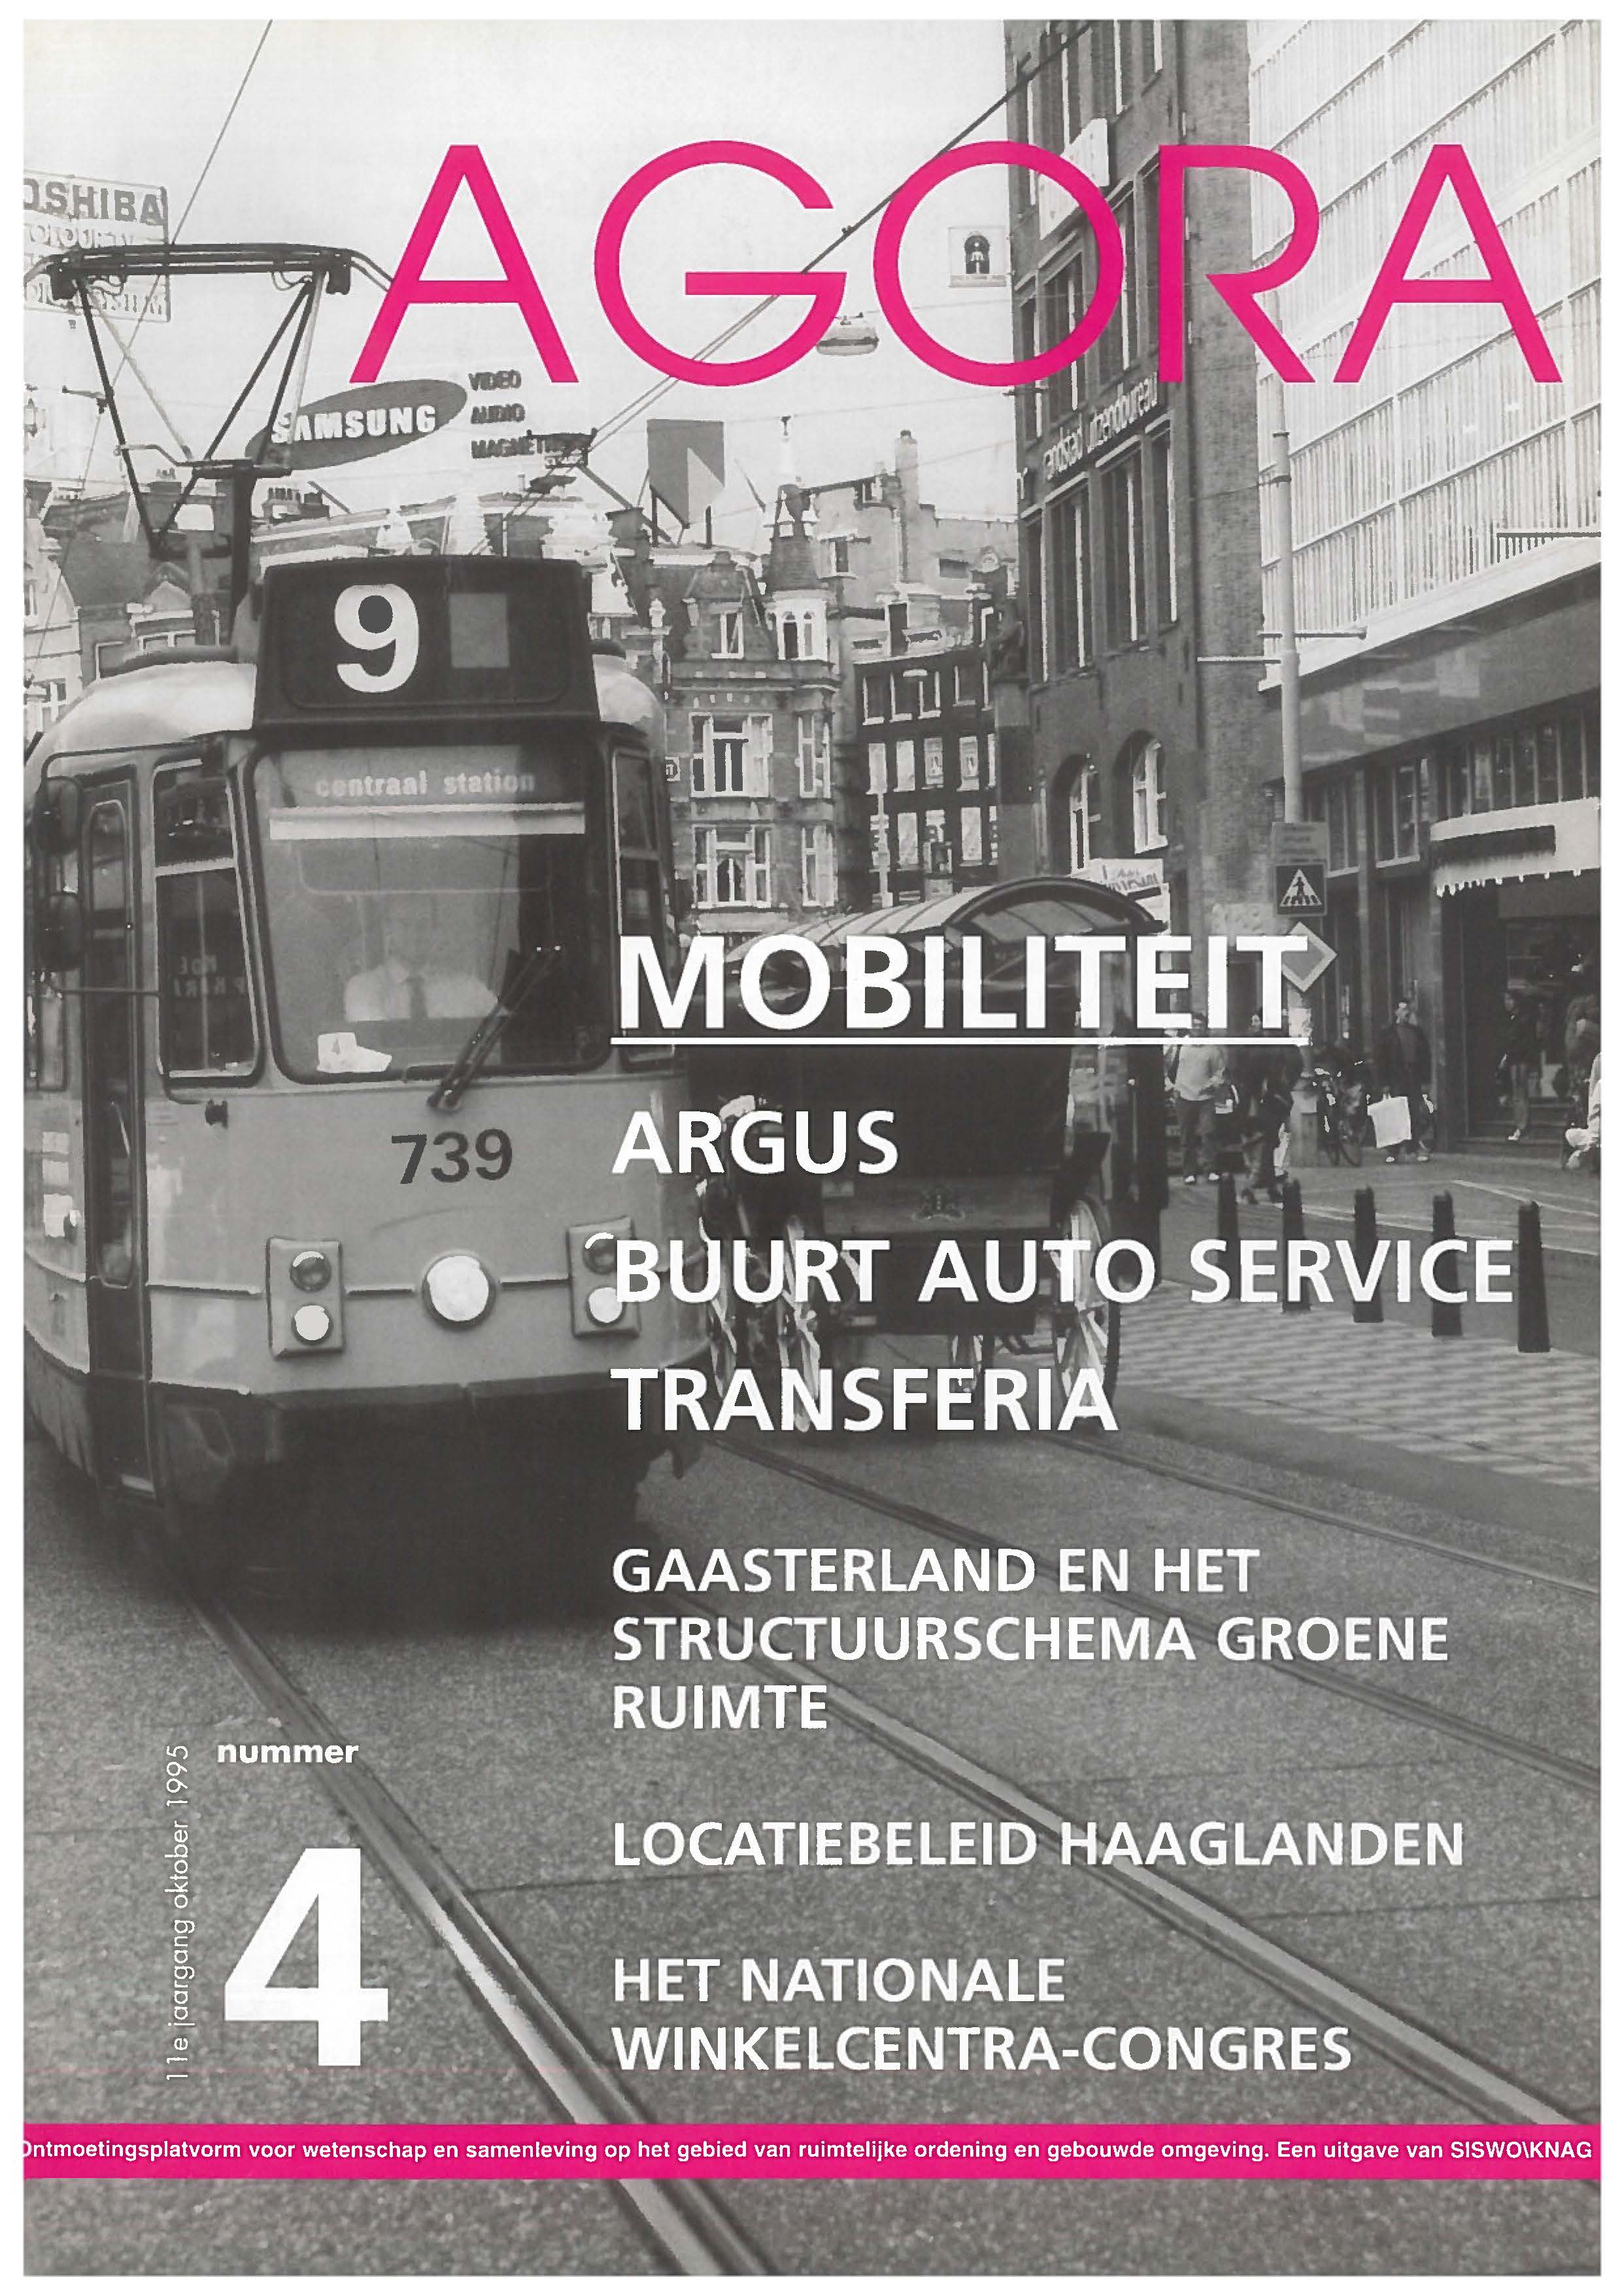 Buurt Auto Service: 'auto delen' in Amsterdam?